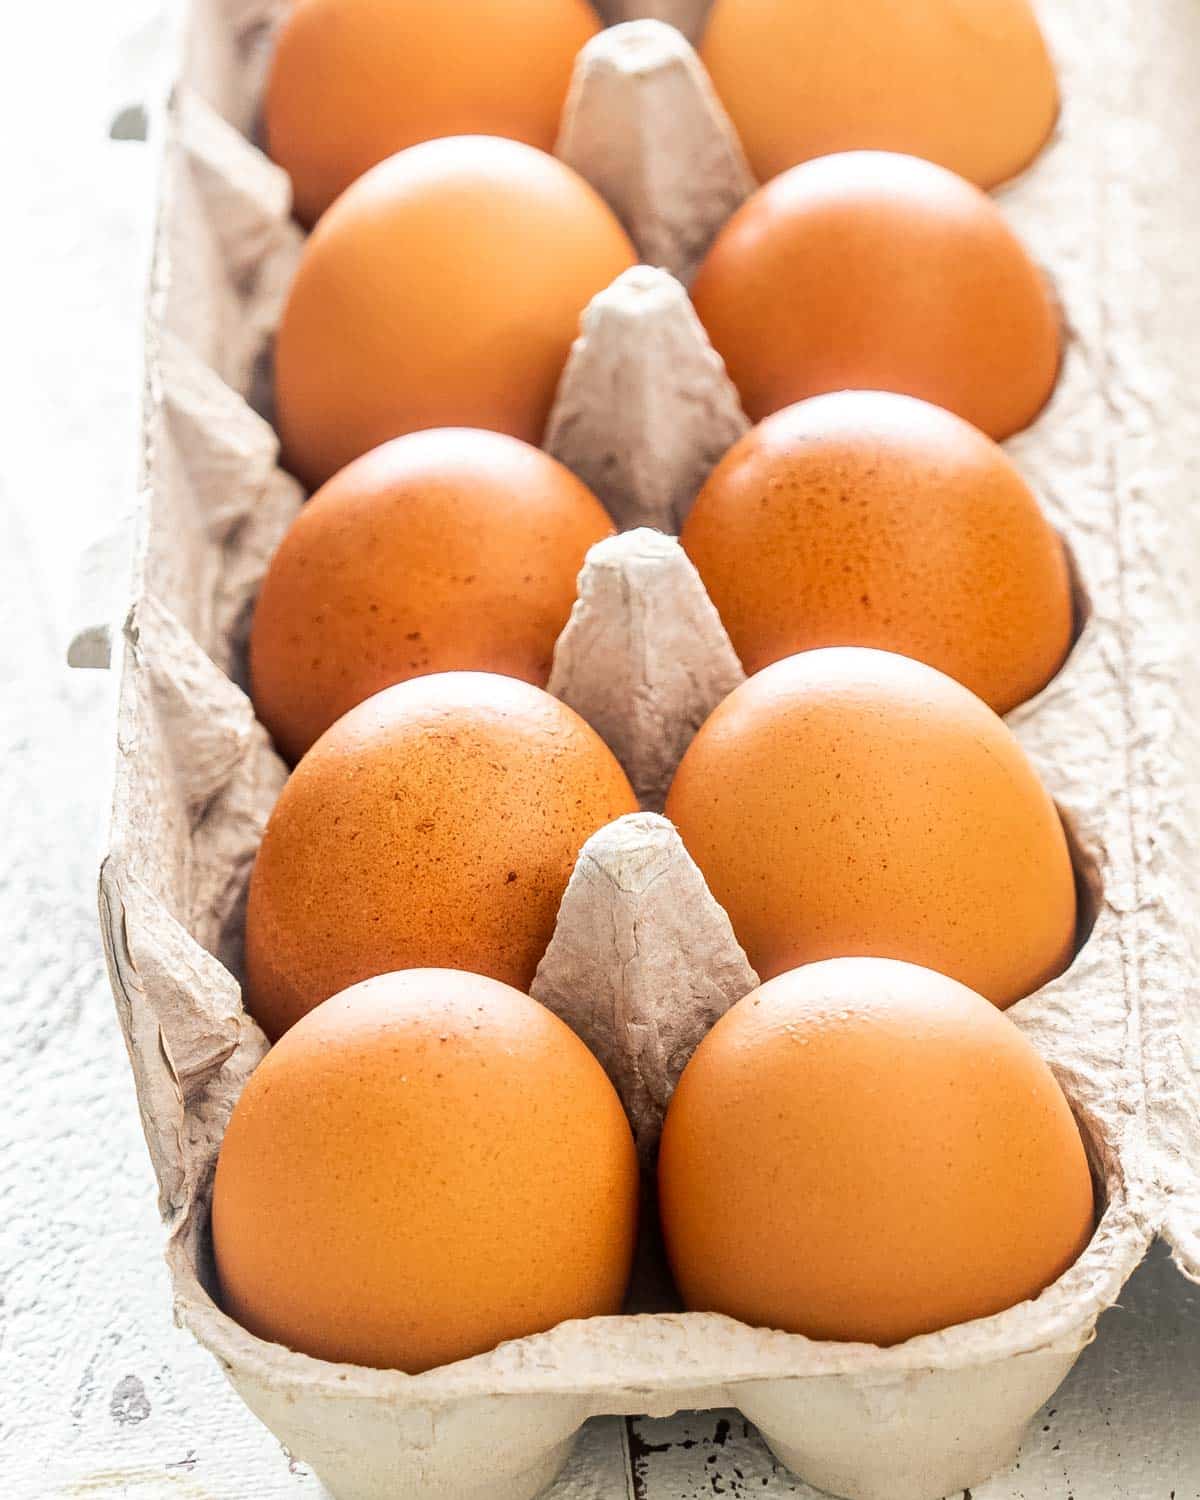 eggs in a carton.